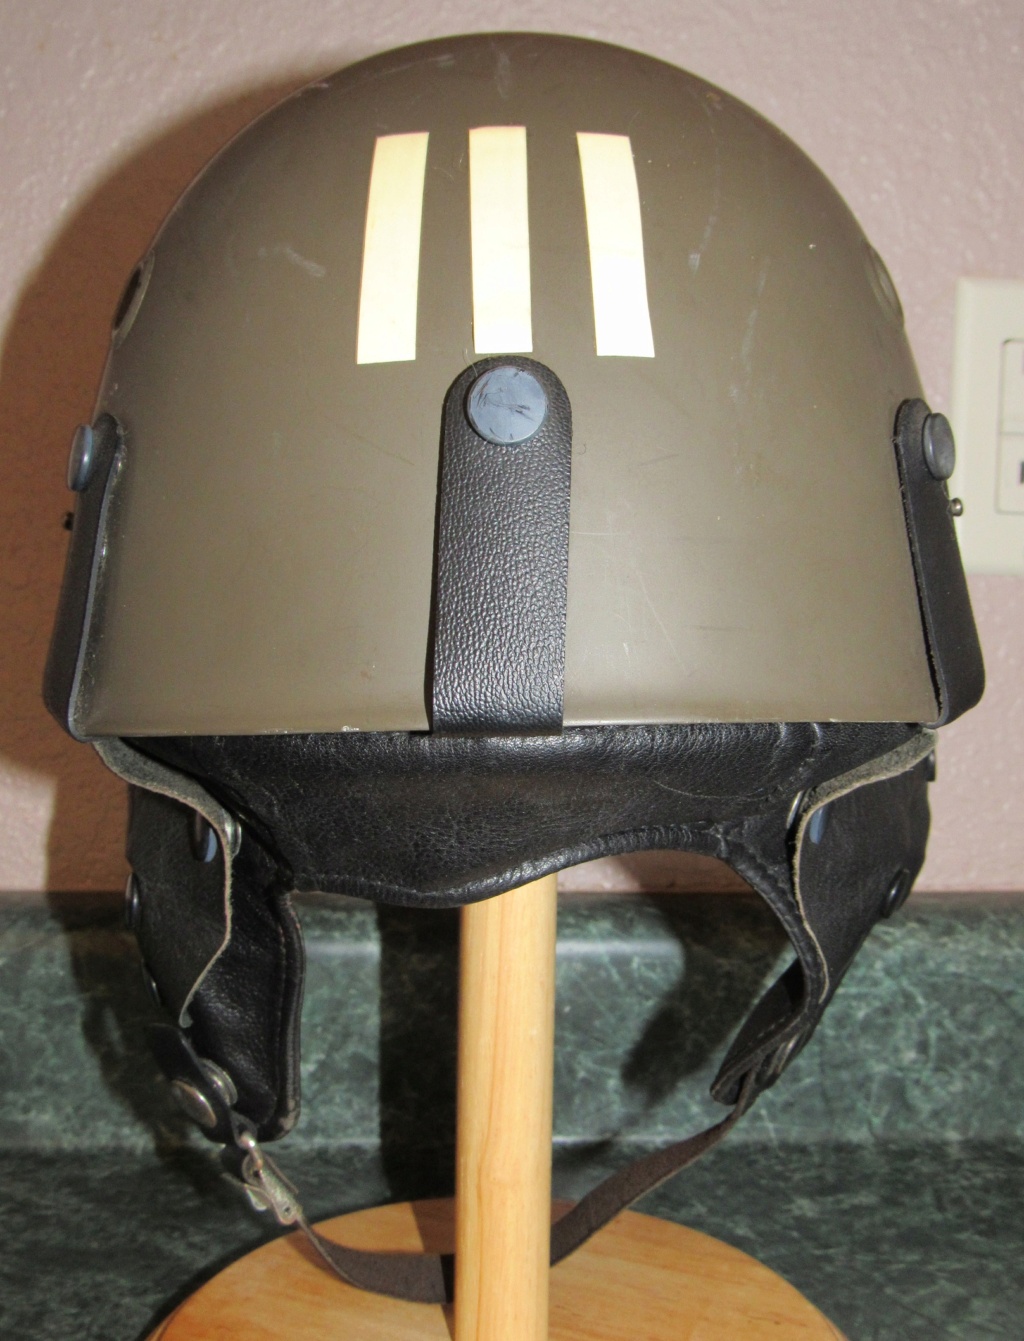 JSDF Helmets Jgsdf_61